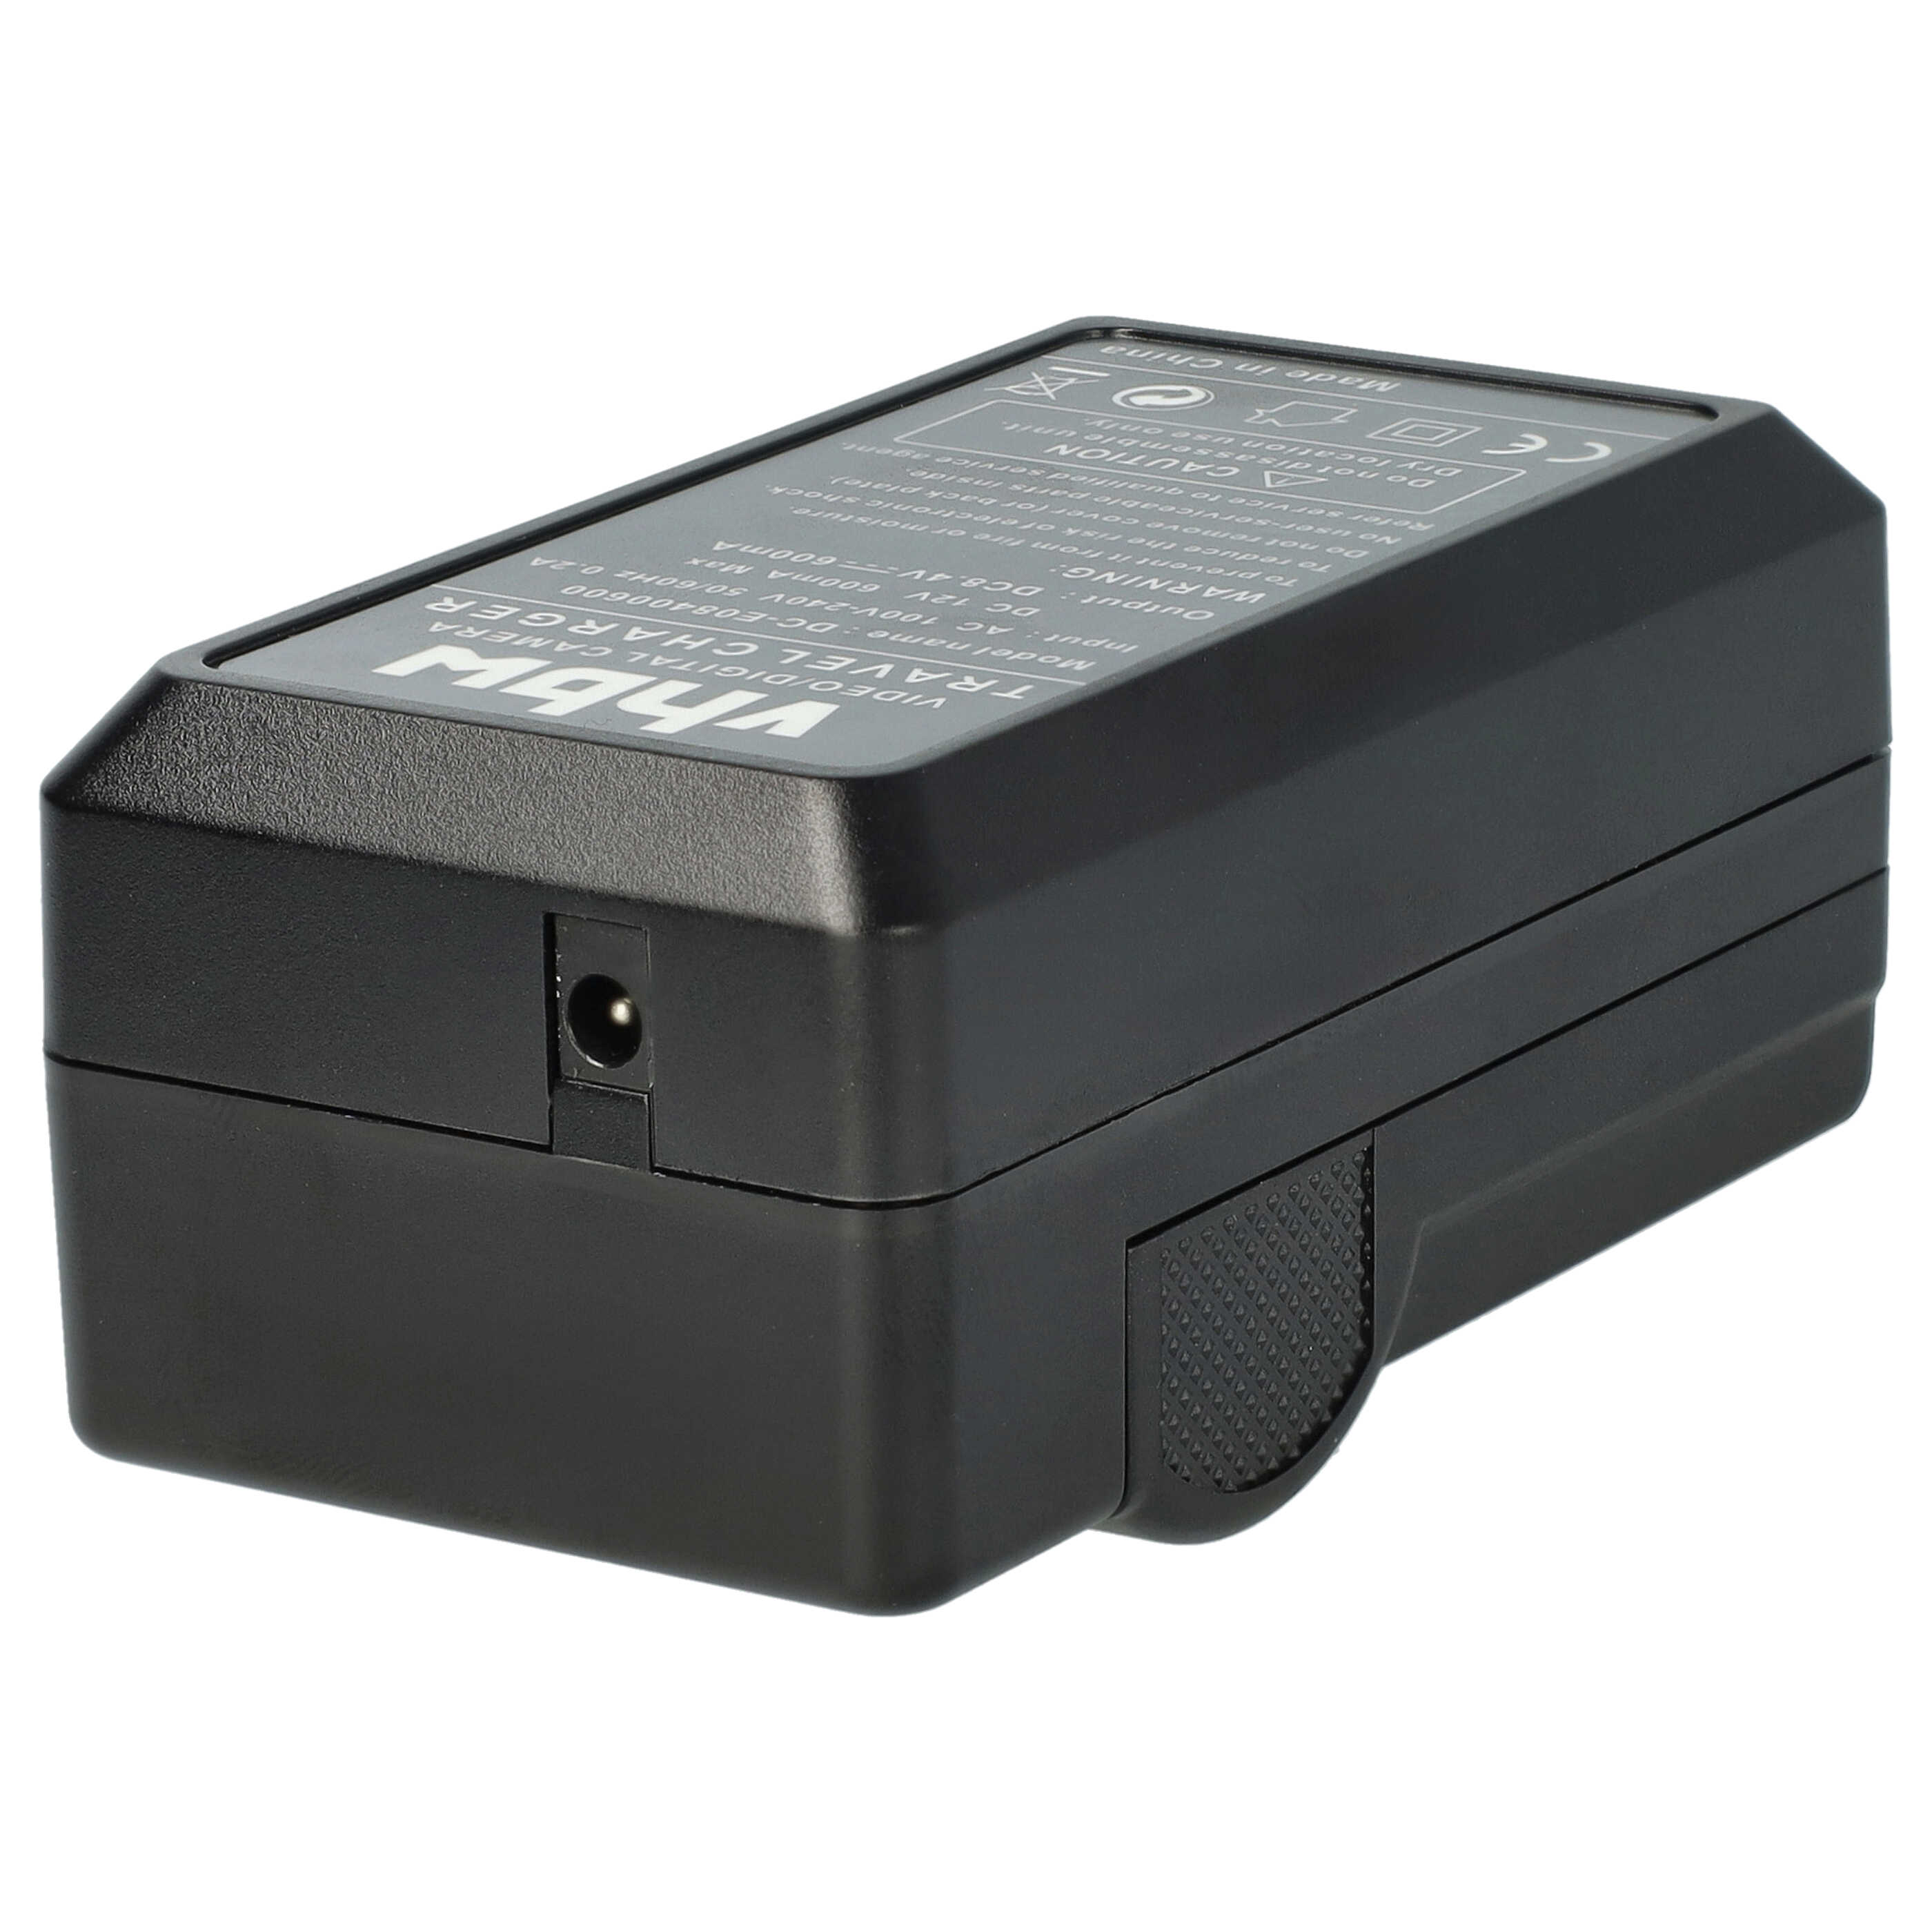 Akku Ladegerät passend für Sony NP-FW50 Kamera u.a. - 0,6 A, 8,4 V